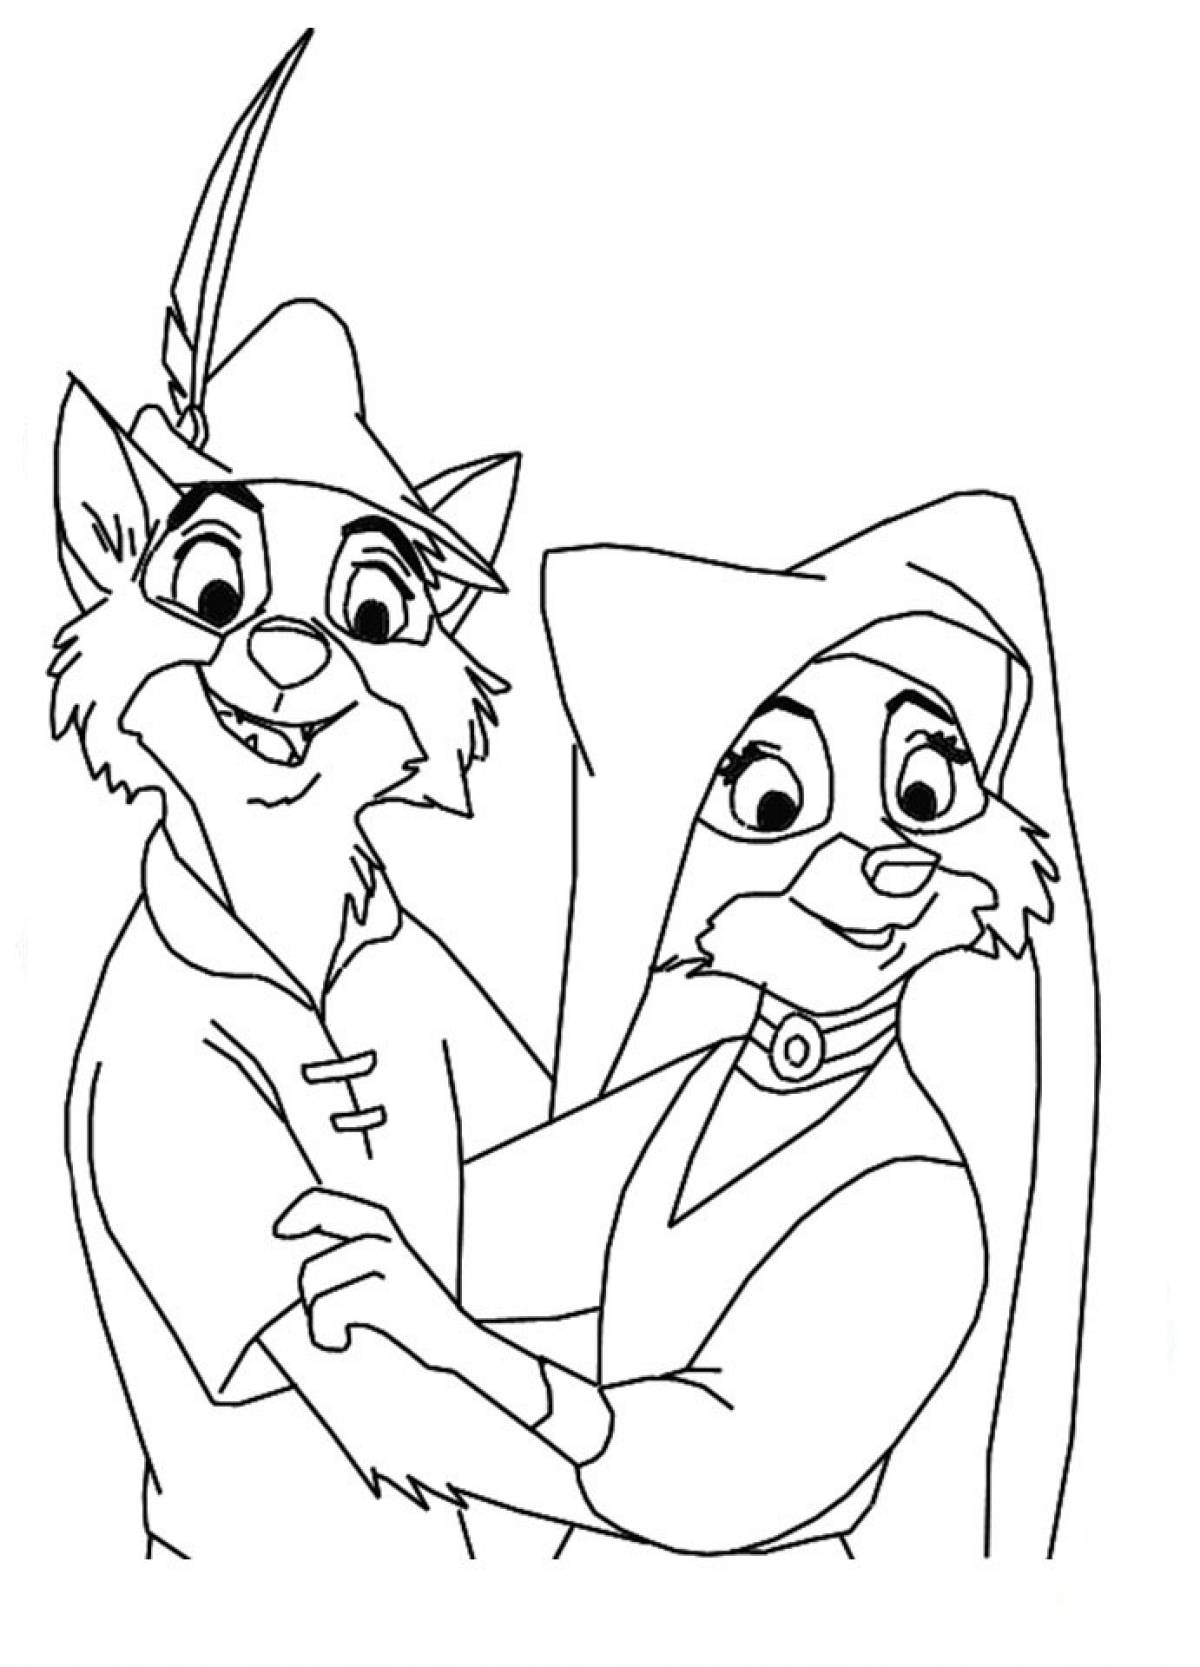 Robin Hood and Marian